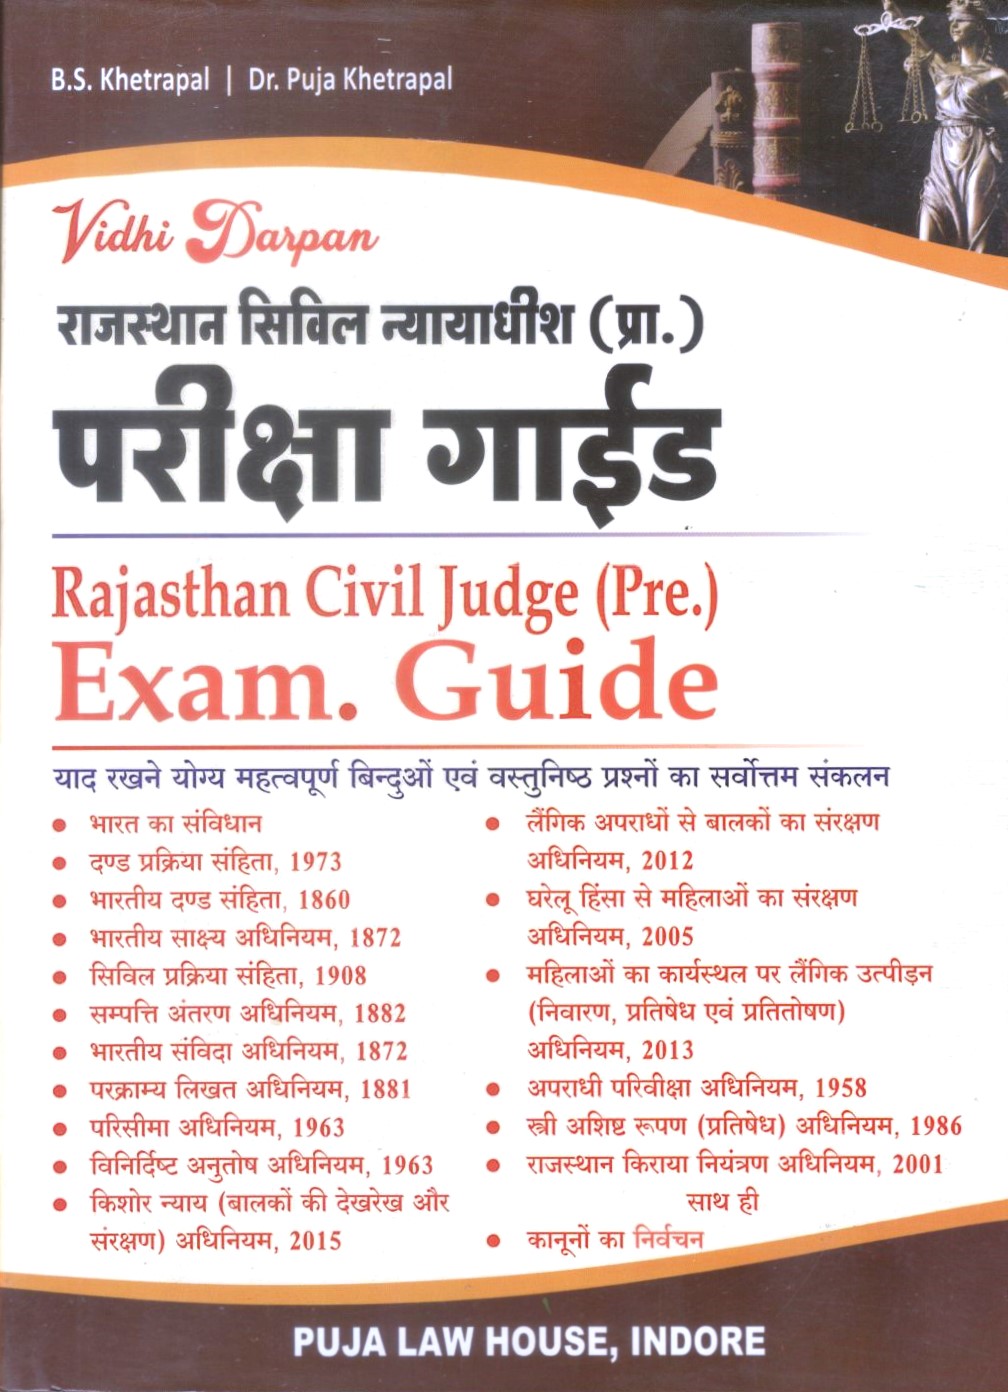 Vidhi Darpan - राजस्थान सिविल न्यायाधीश (प्रा.) परीक्षा गाईड  / Rajasthan Civil Judge (Pre.) Exam. Guide